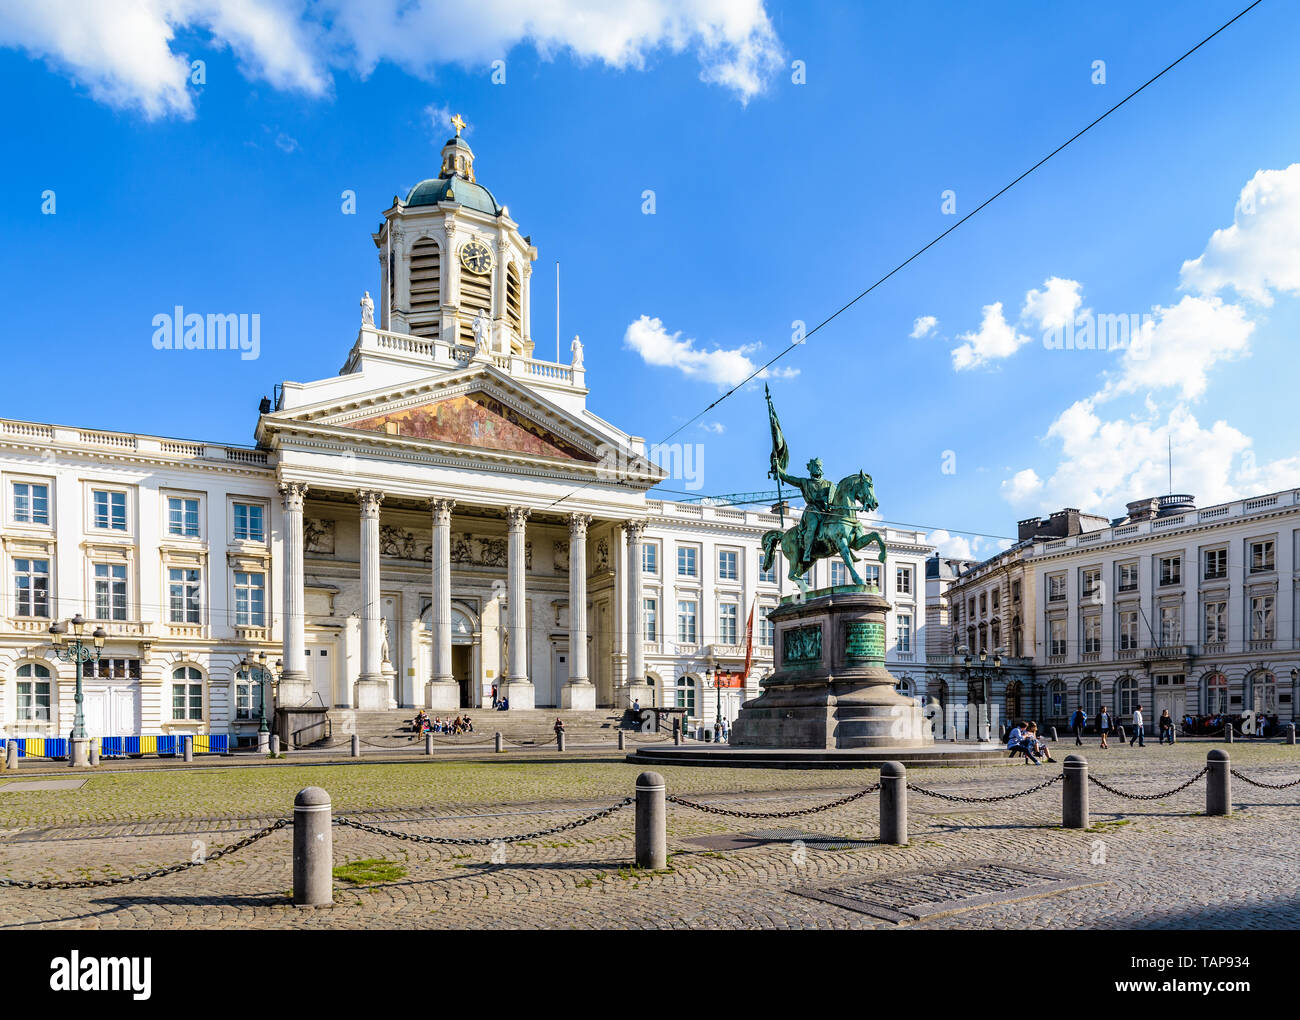 Vue générale de la Place Royale à Bruxelles, Belgique, avec une statue de Godefroid de Bouillon et l'église de Saint-Jacques-sur-Coudenberg. Banque D'Images